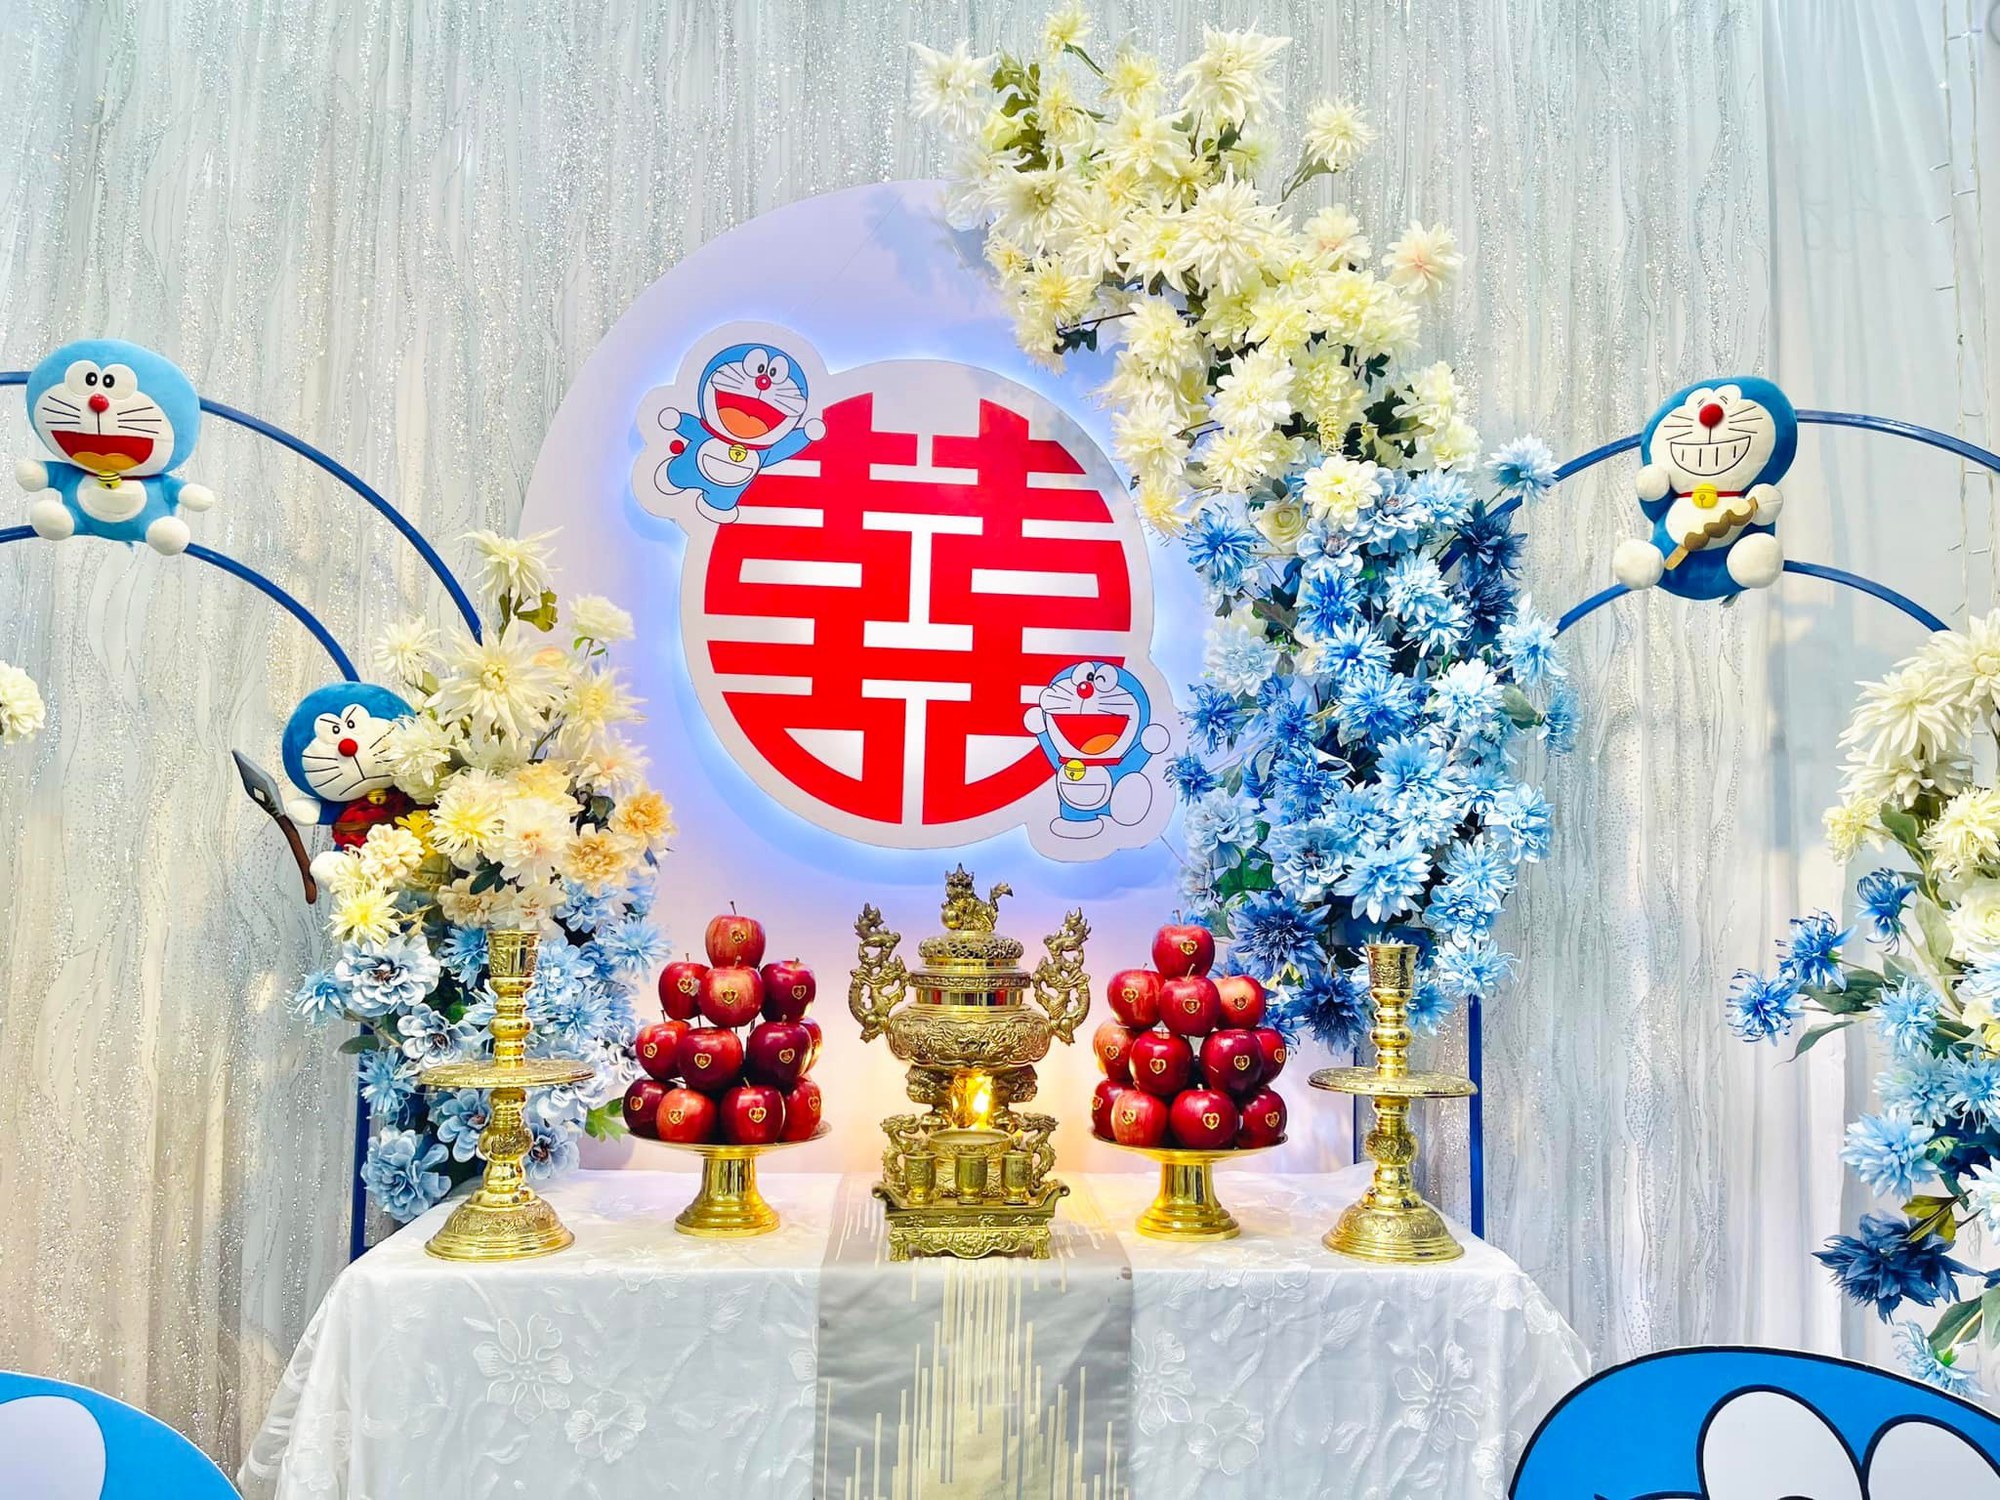 Đám cưới đặc biệt của cặp đôi 'fan cuồng' truyện tranh Doraemon - Ảnh 19.